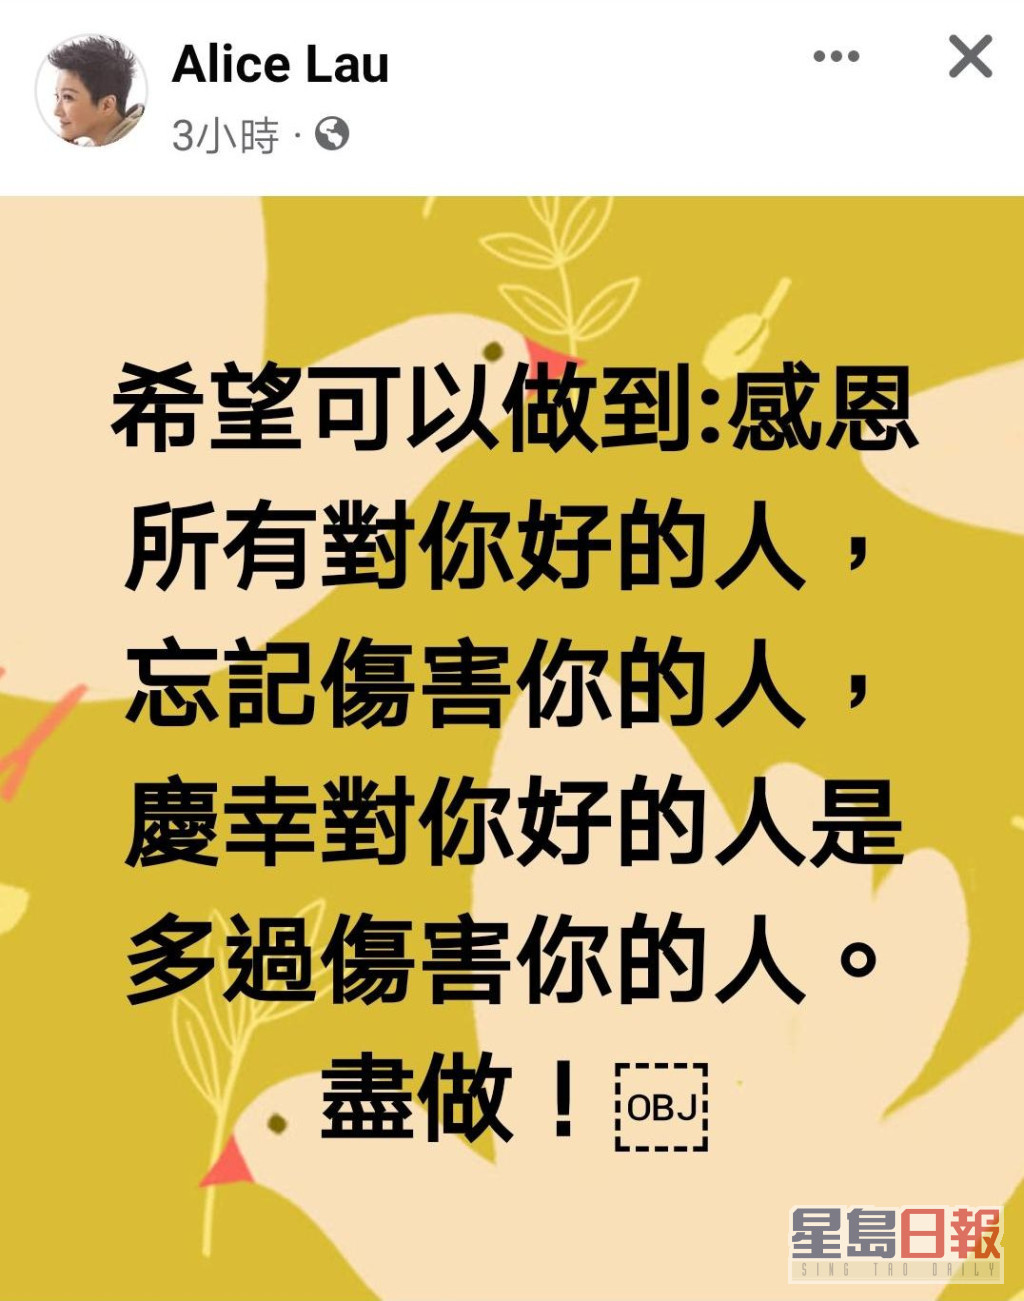 刘雅丽喺FB发表「感恩论」。